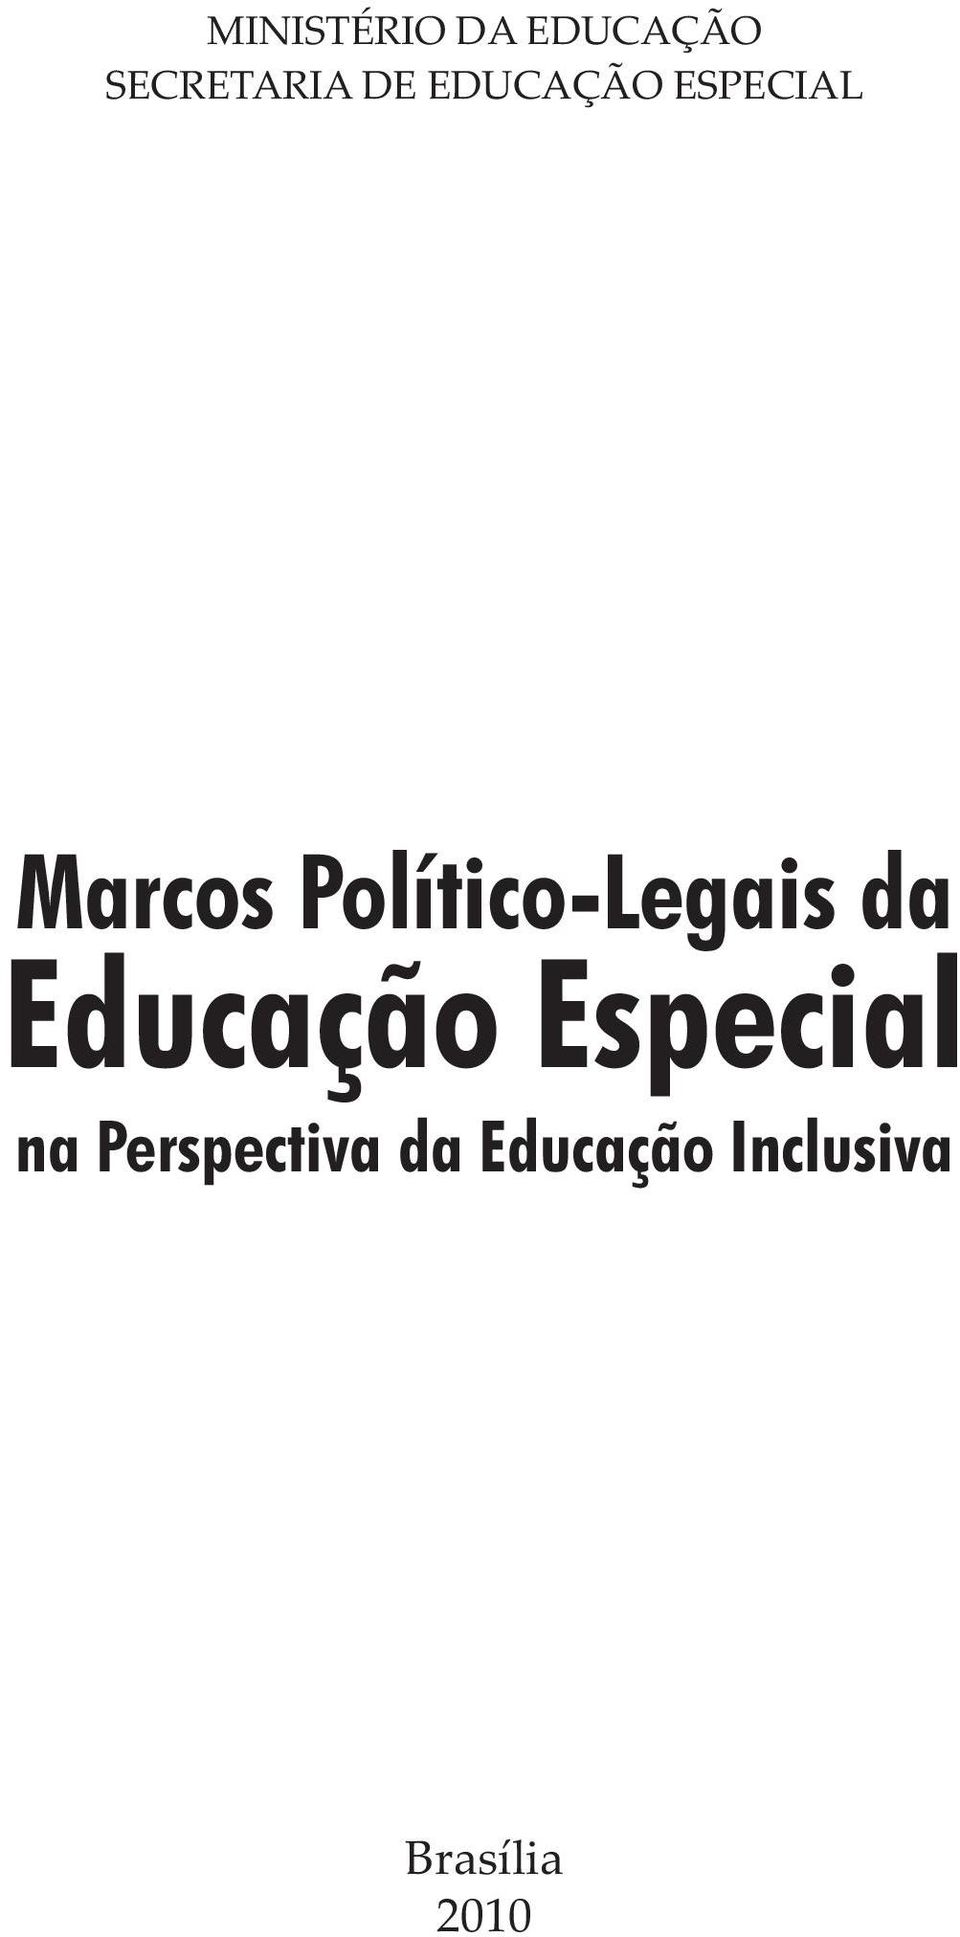 Político-Legais da Educação Especial